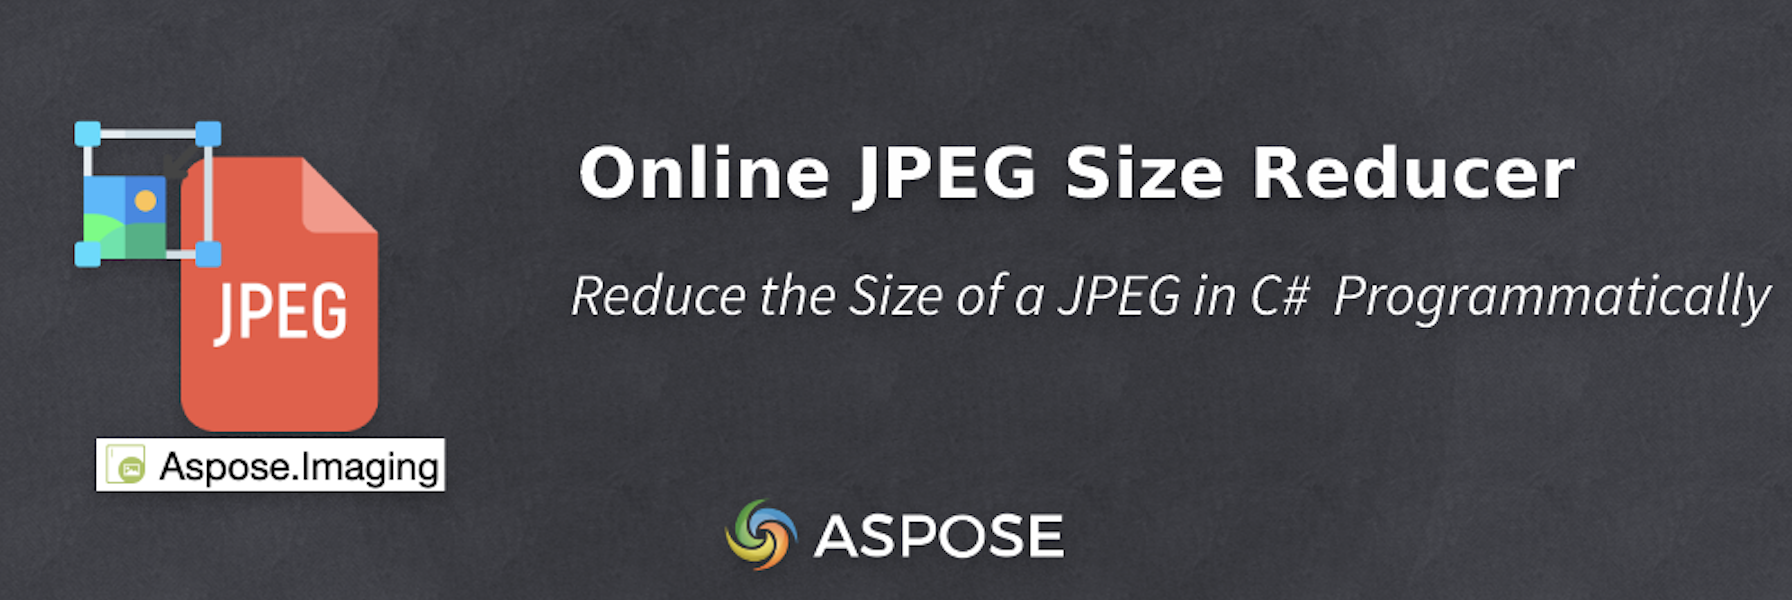 ลดขนาดของ JPEG ใน C# - ตัวลดขนาด JPEG ออนไลน์